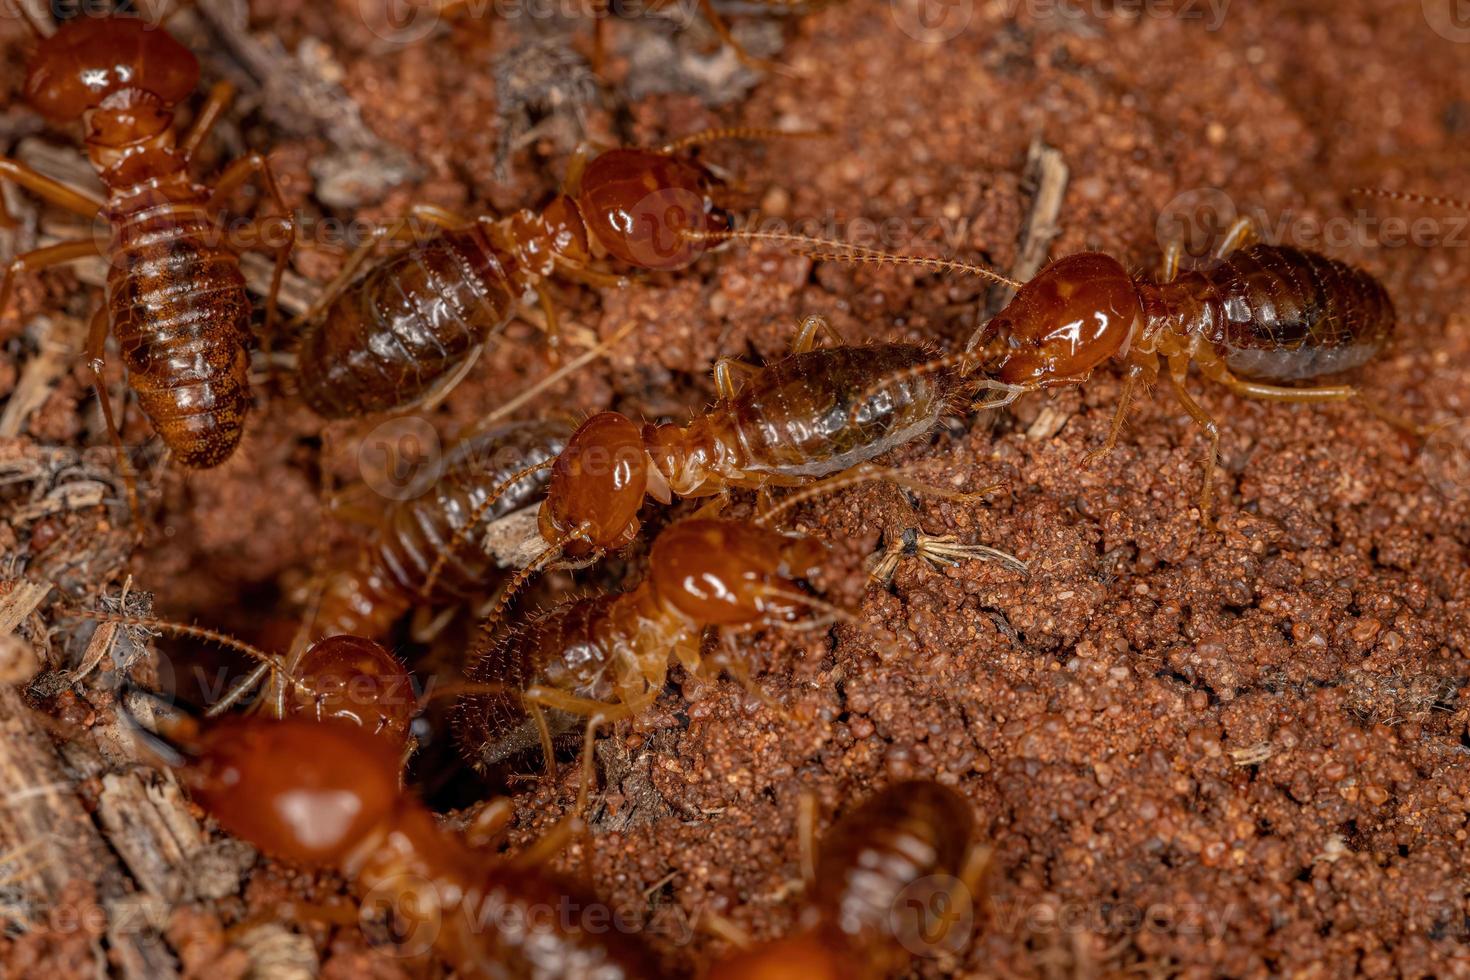 ausgewachsene kieferschnäuzige Termiten foto